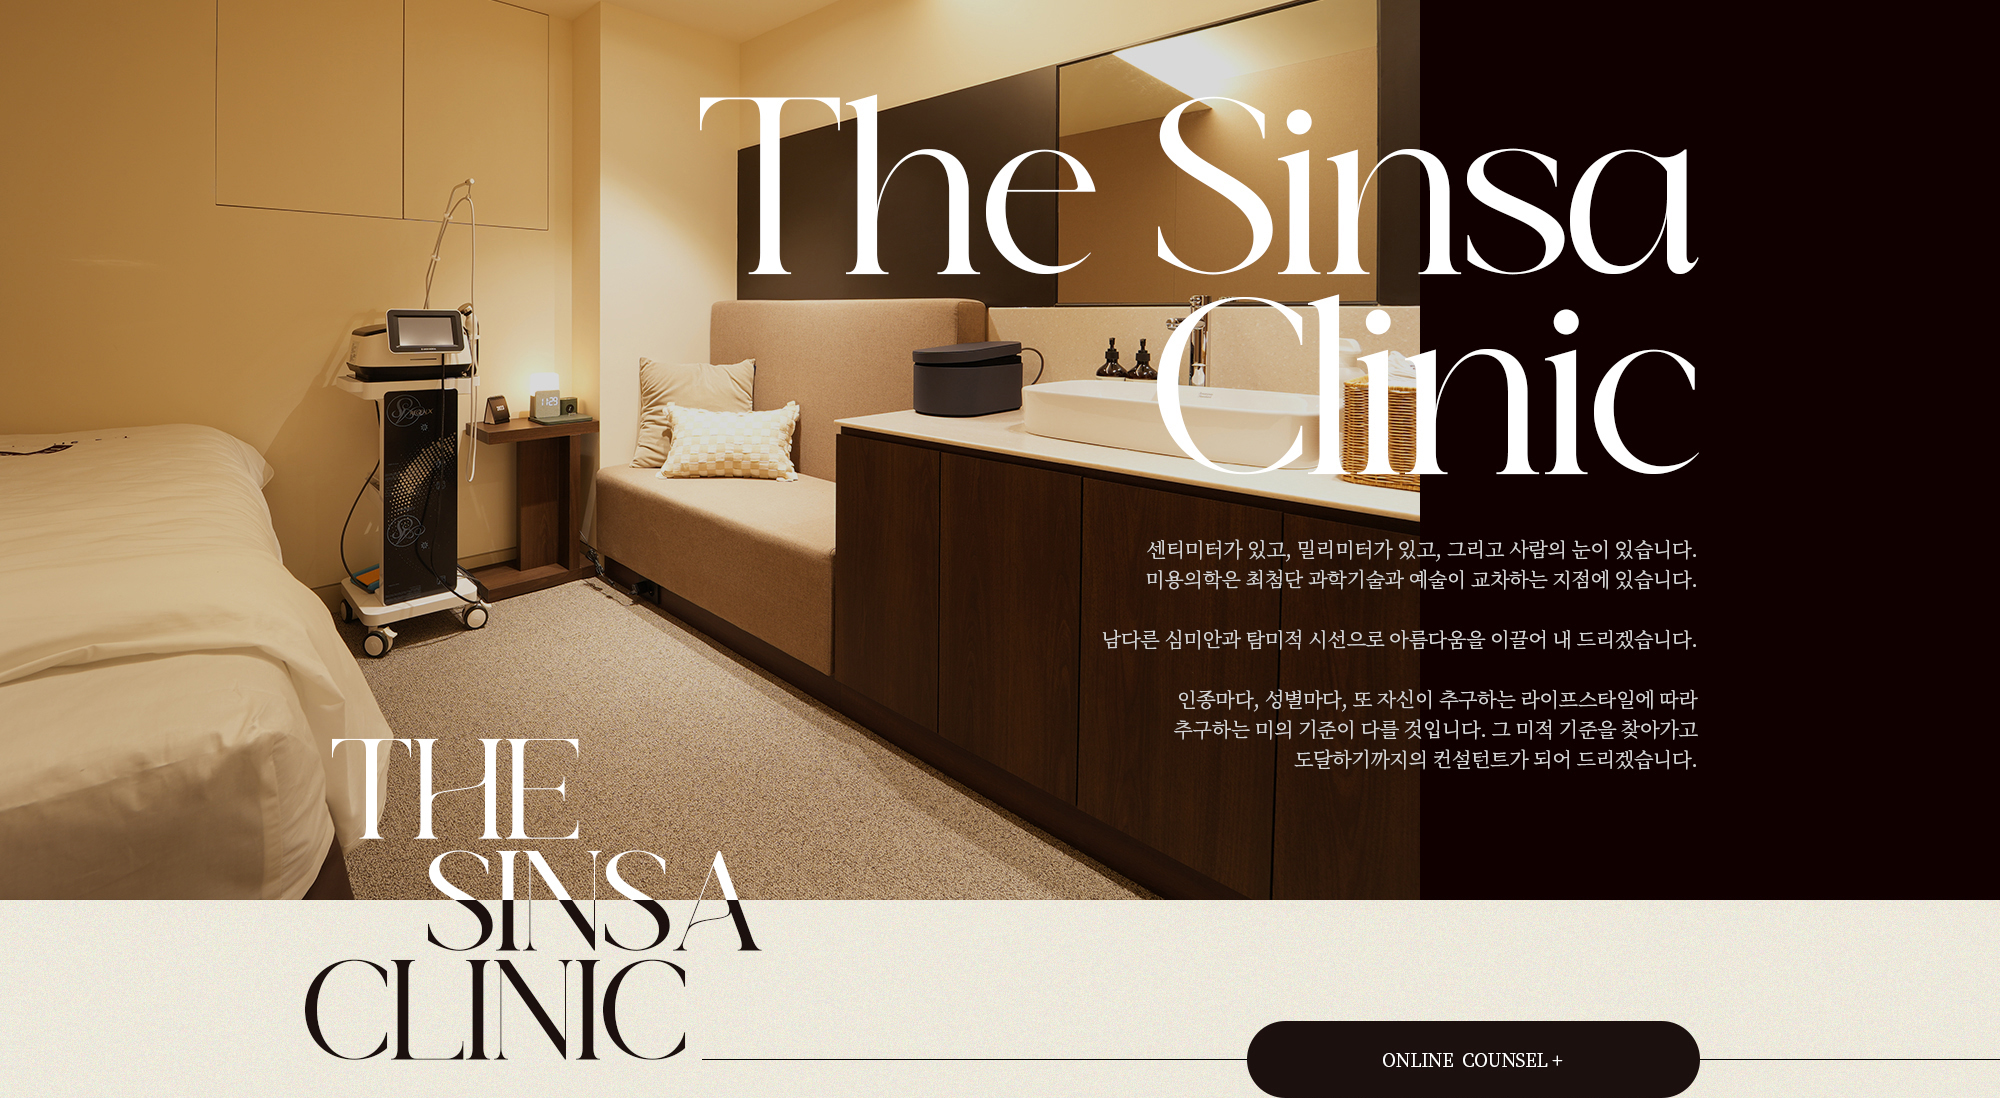 The Sinsa Clinic